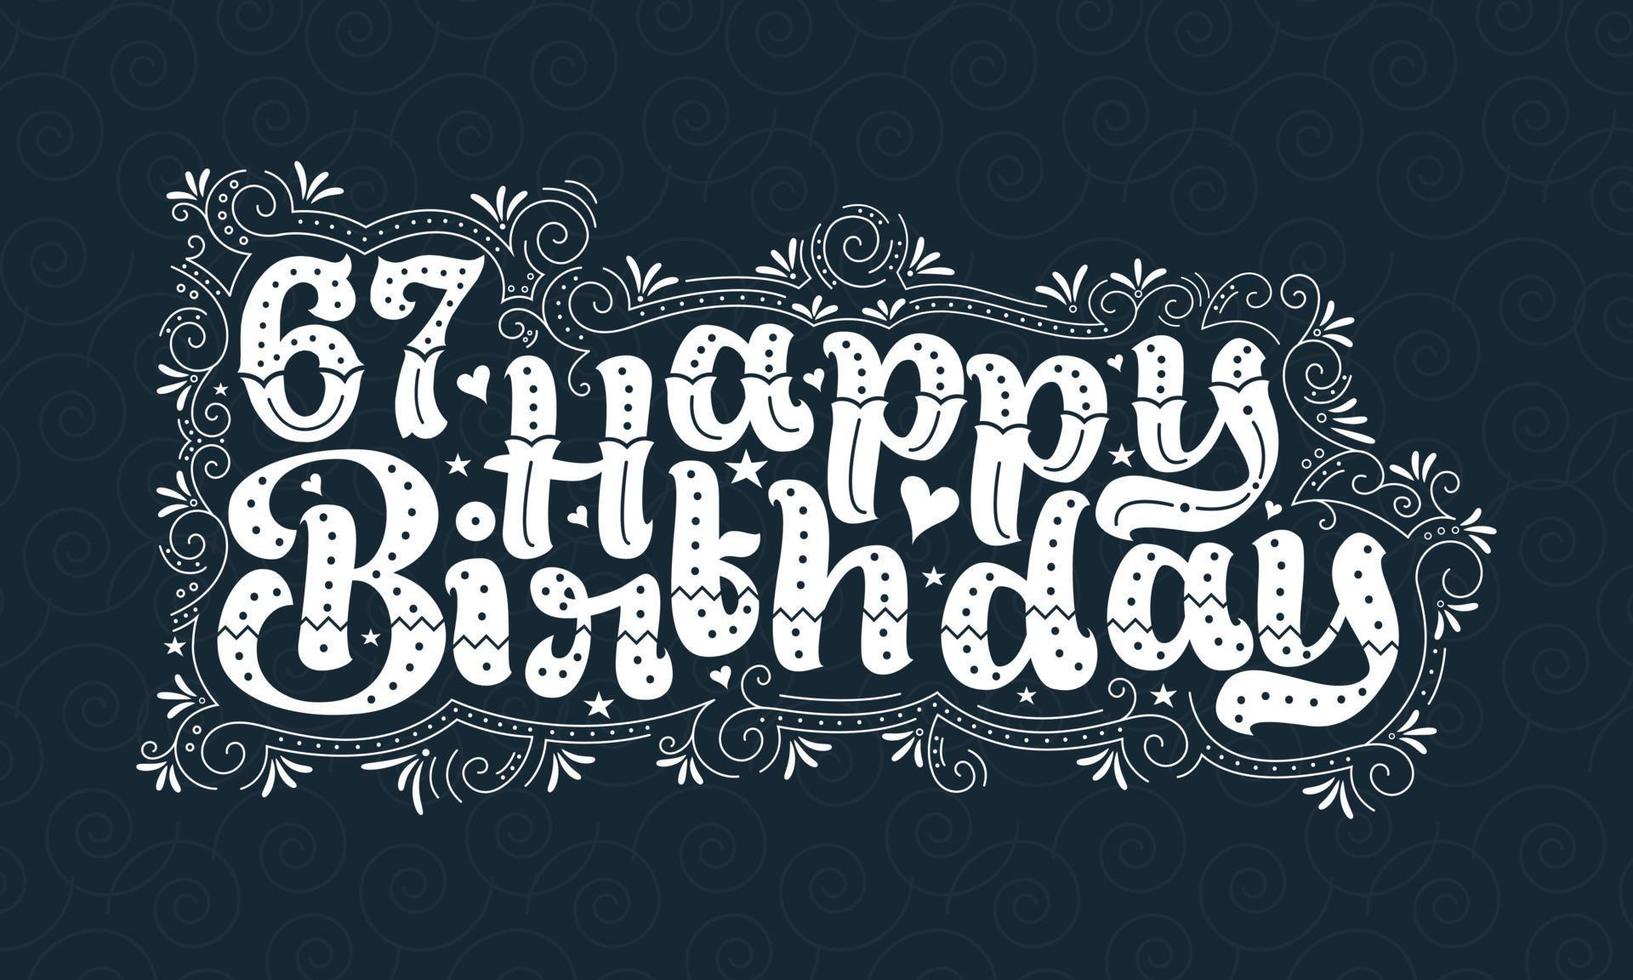 67 letras de feliz cumpleaños, 67 años de cumpleaños hermoso diseño tipográfico con puntos, líneas y hojas. vector